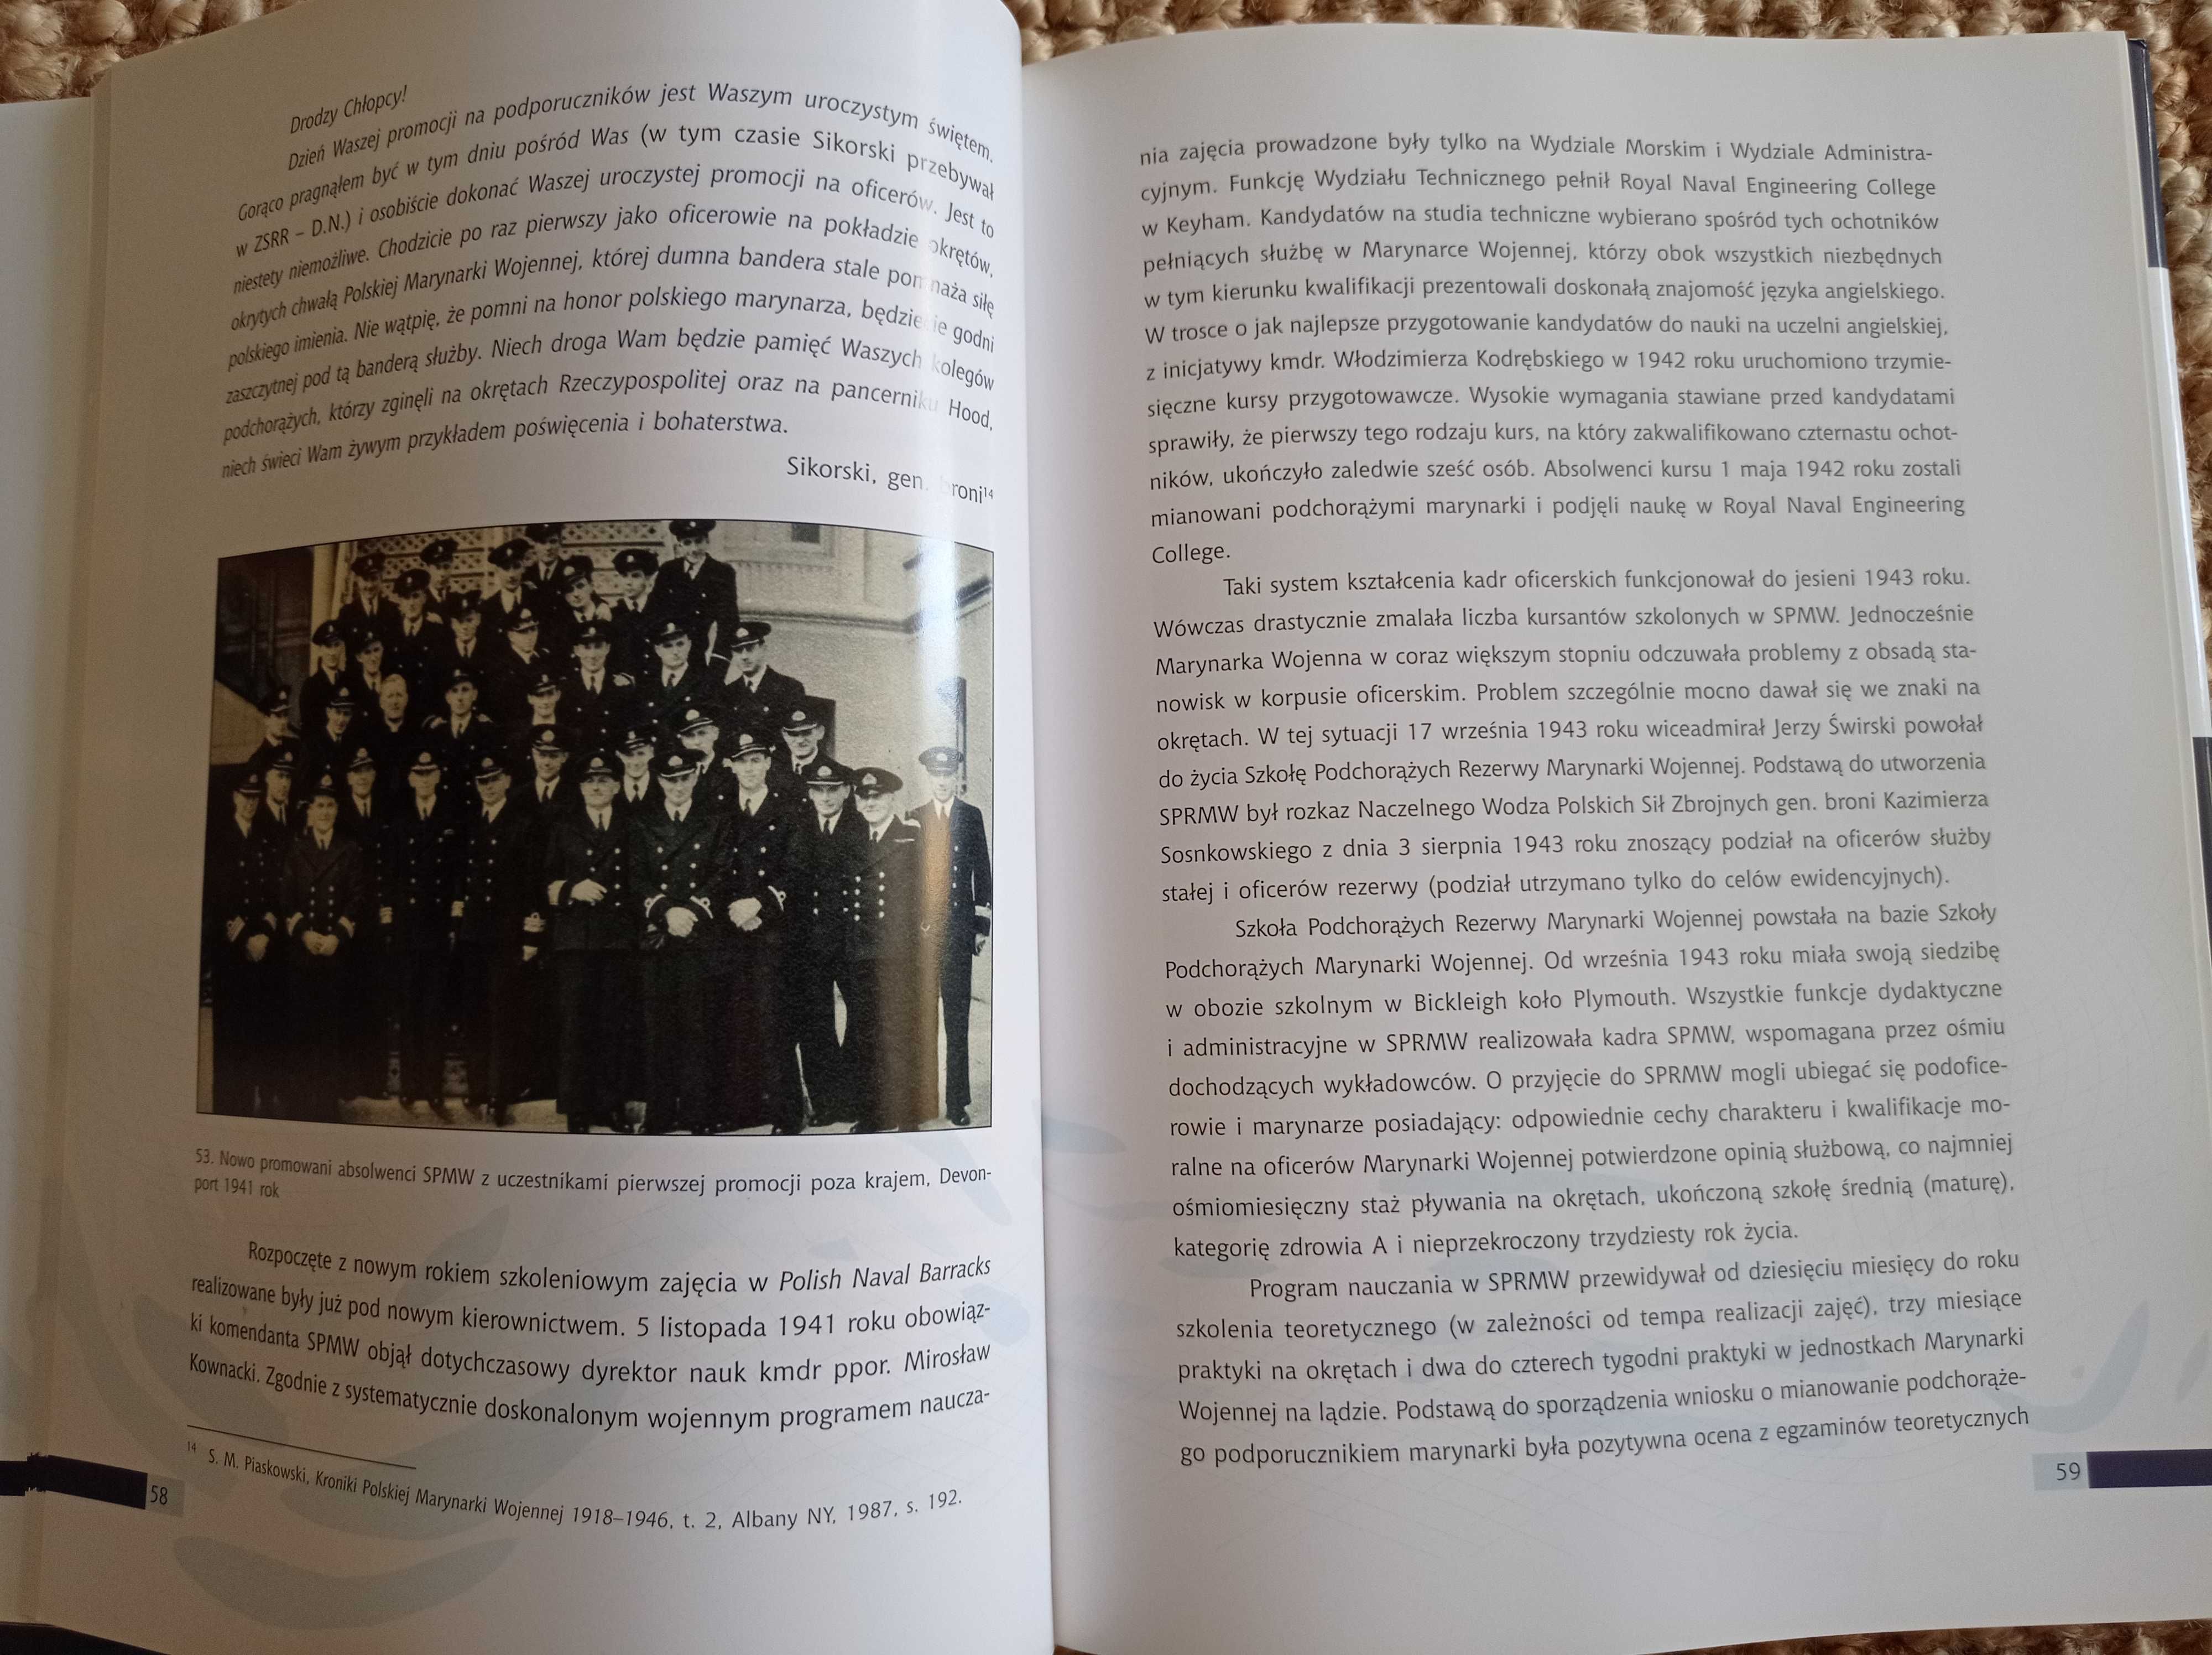 Akademia Marynarki Wojennej, zarys dziejów 1922 - 2012